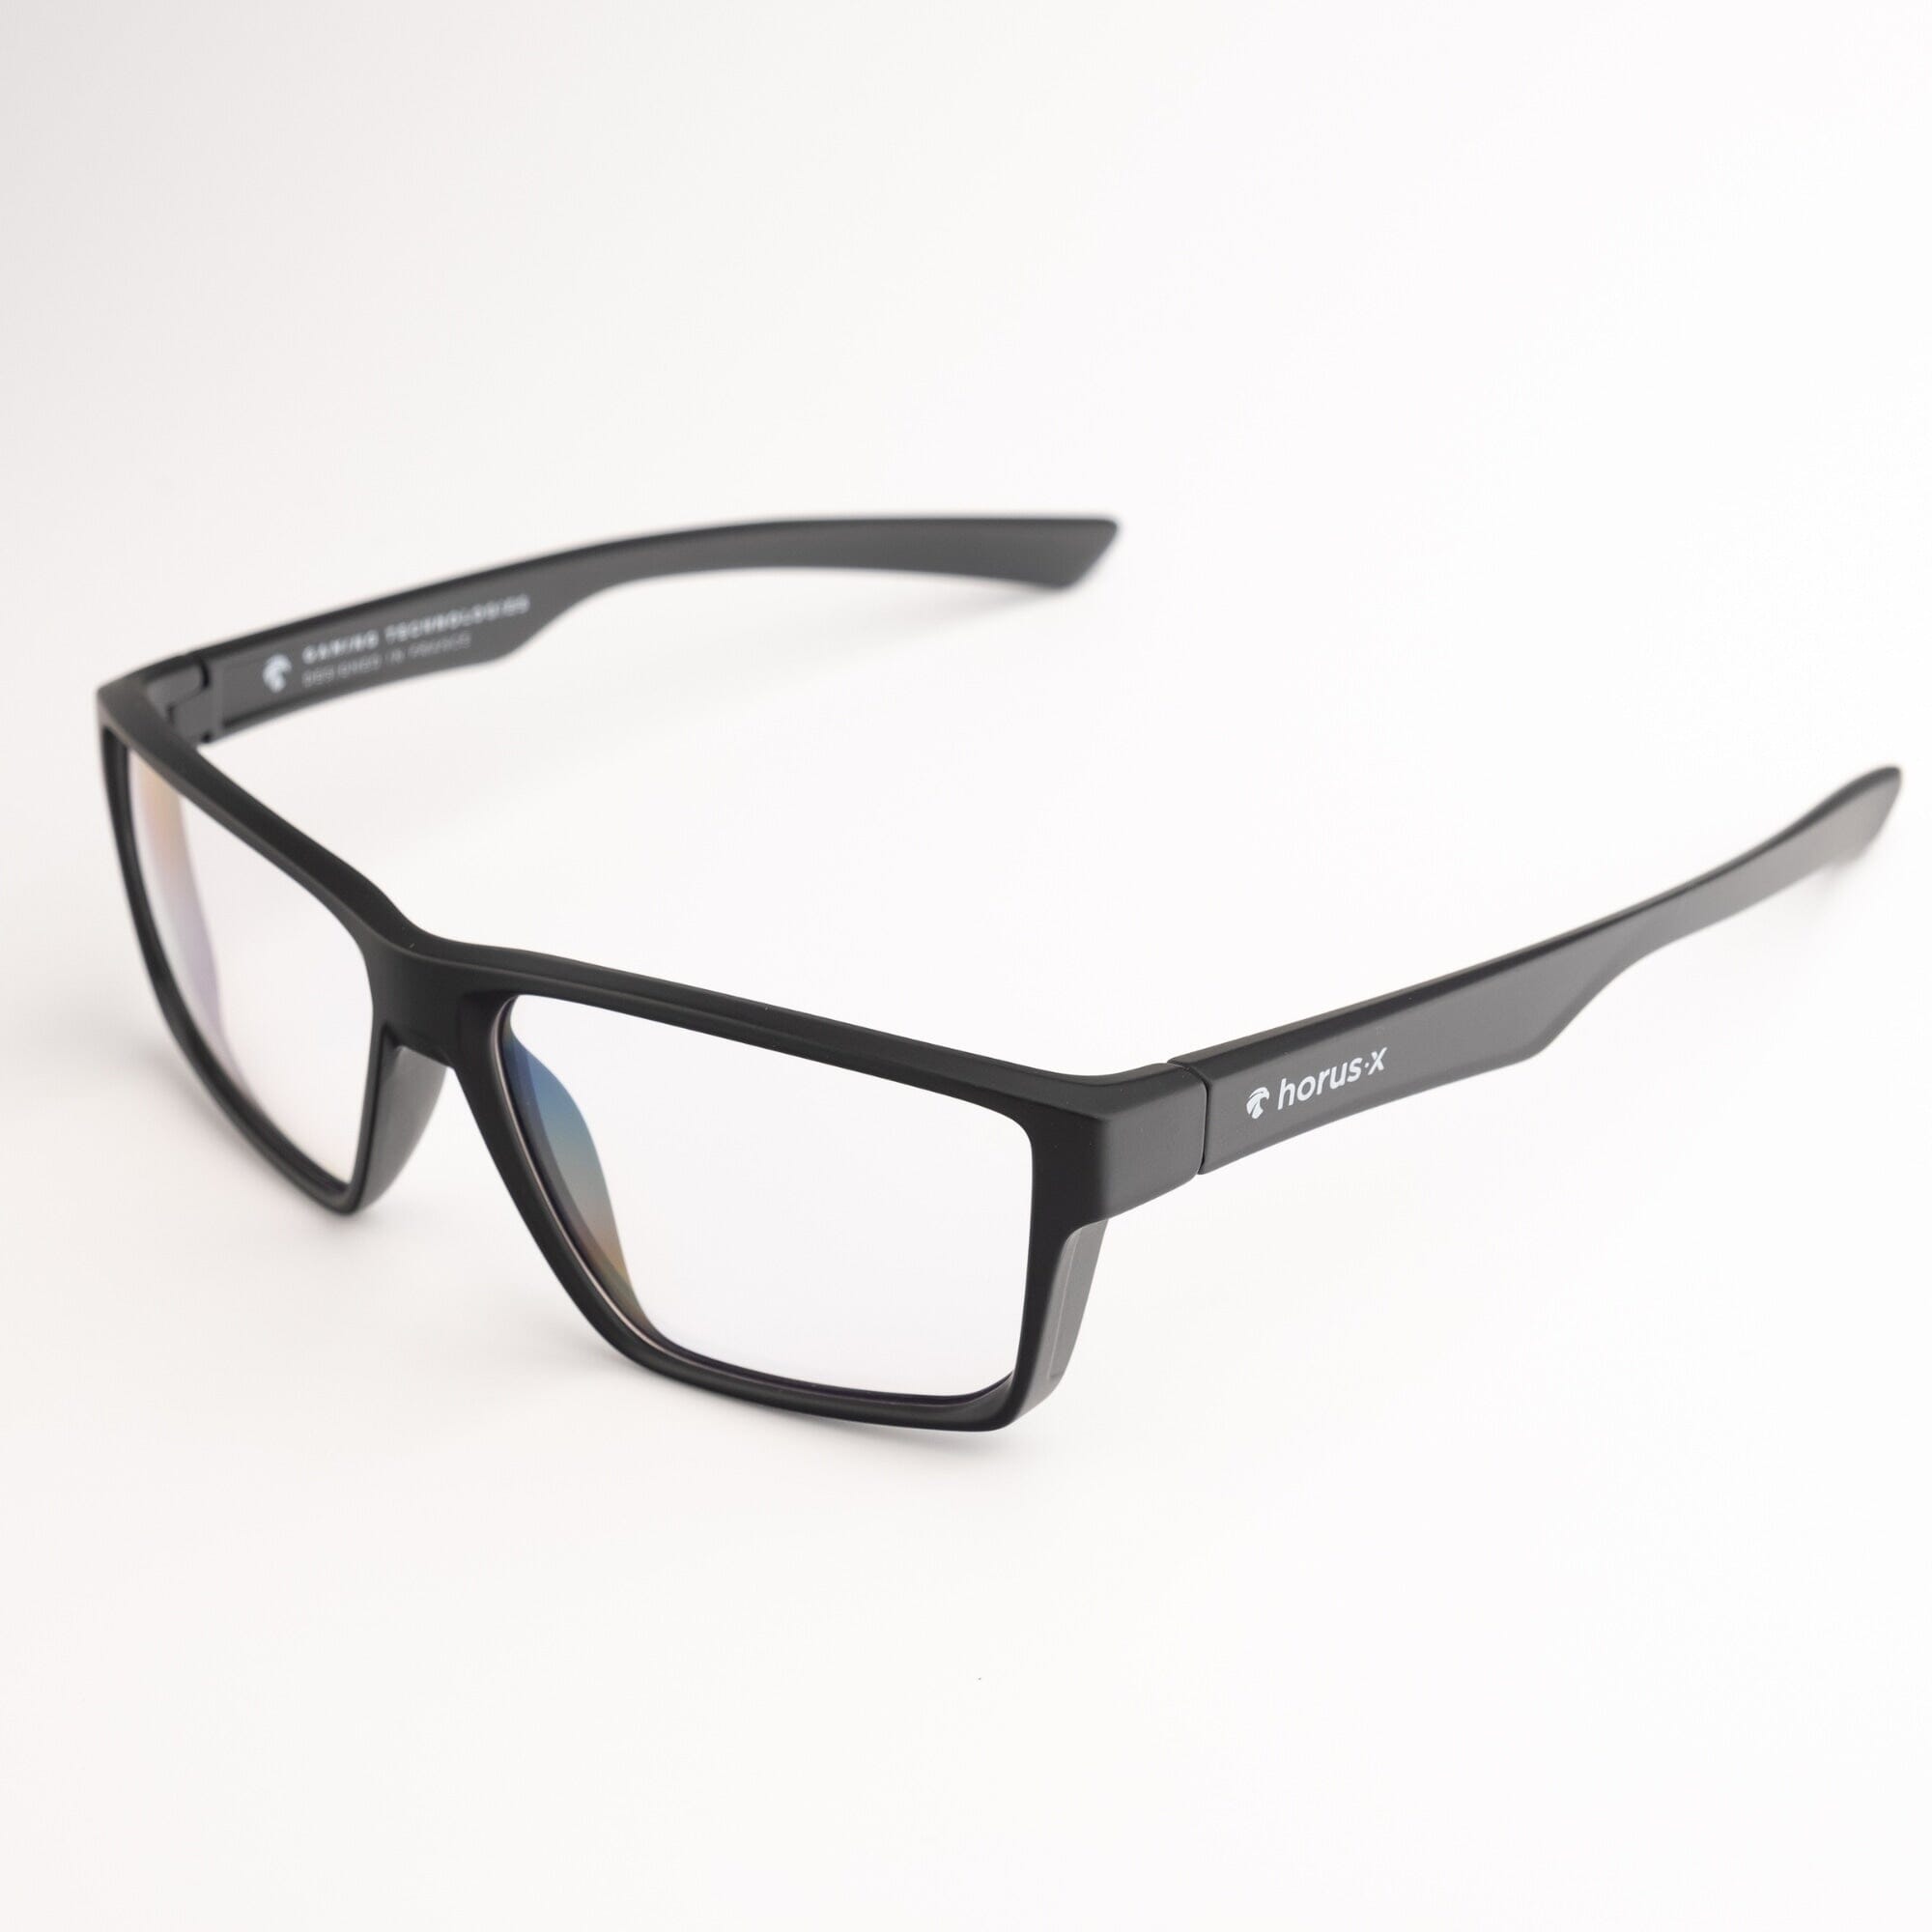 Nuestras nuevas gafas Gaming y Anti Blue Light – Zerpico